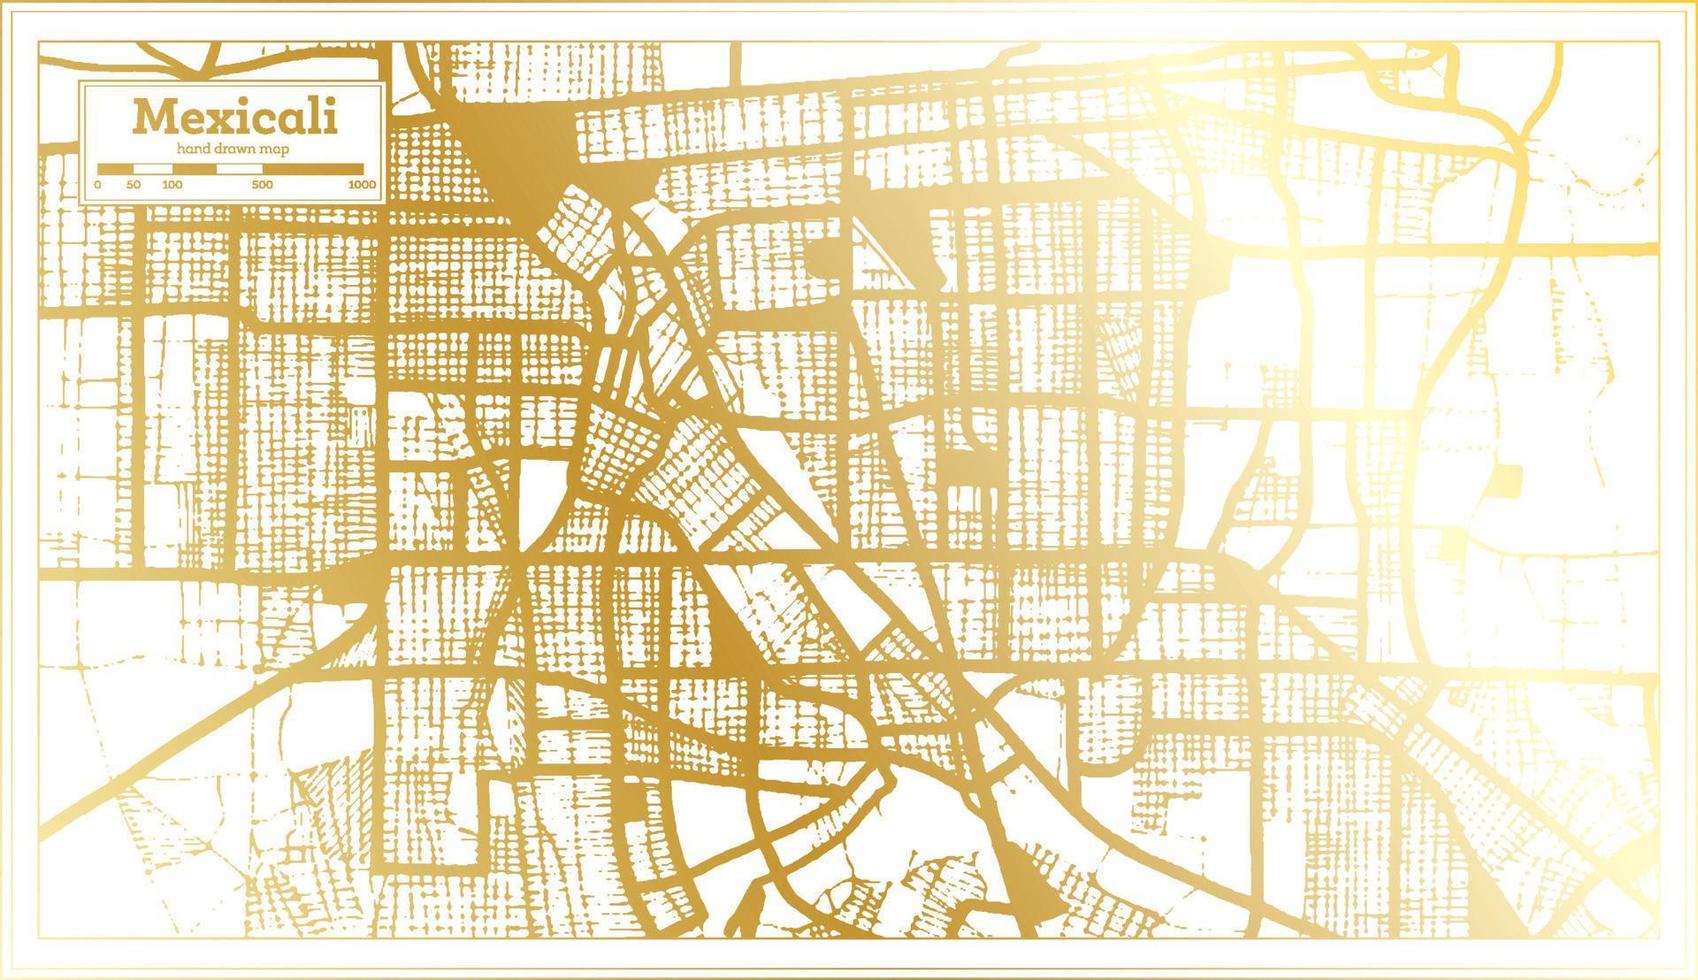 mexicali plan de la ville de mexico dans un style rétro de couleur dorée. carte muette. vecteur